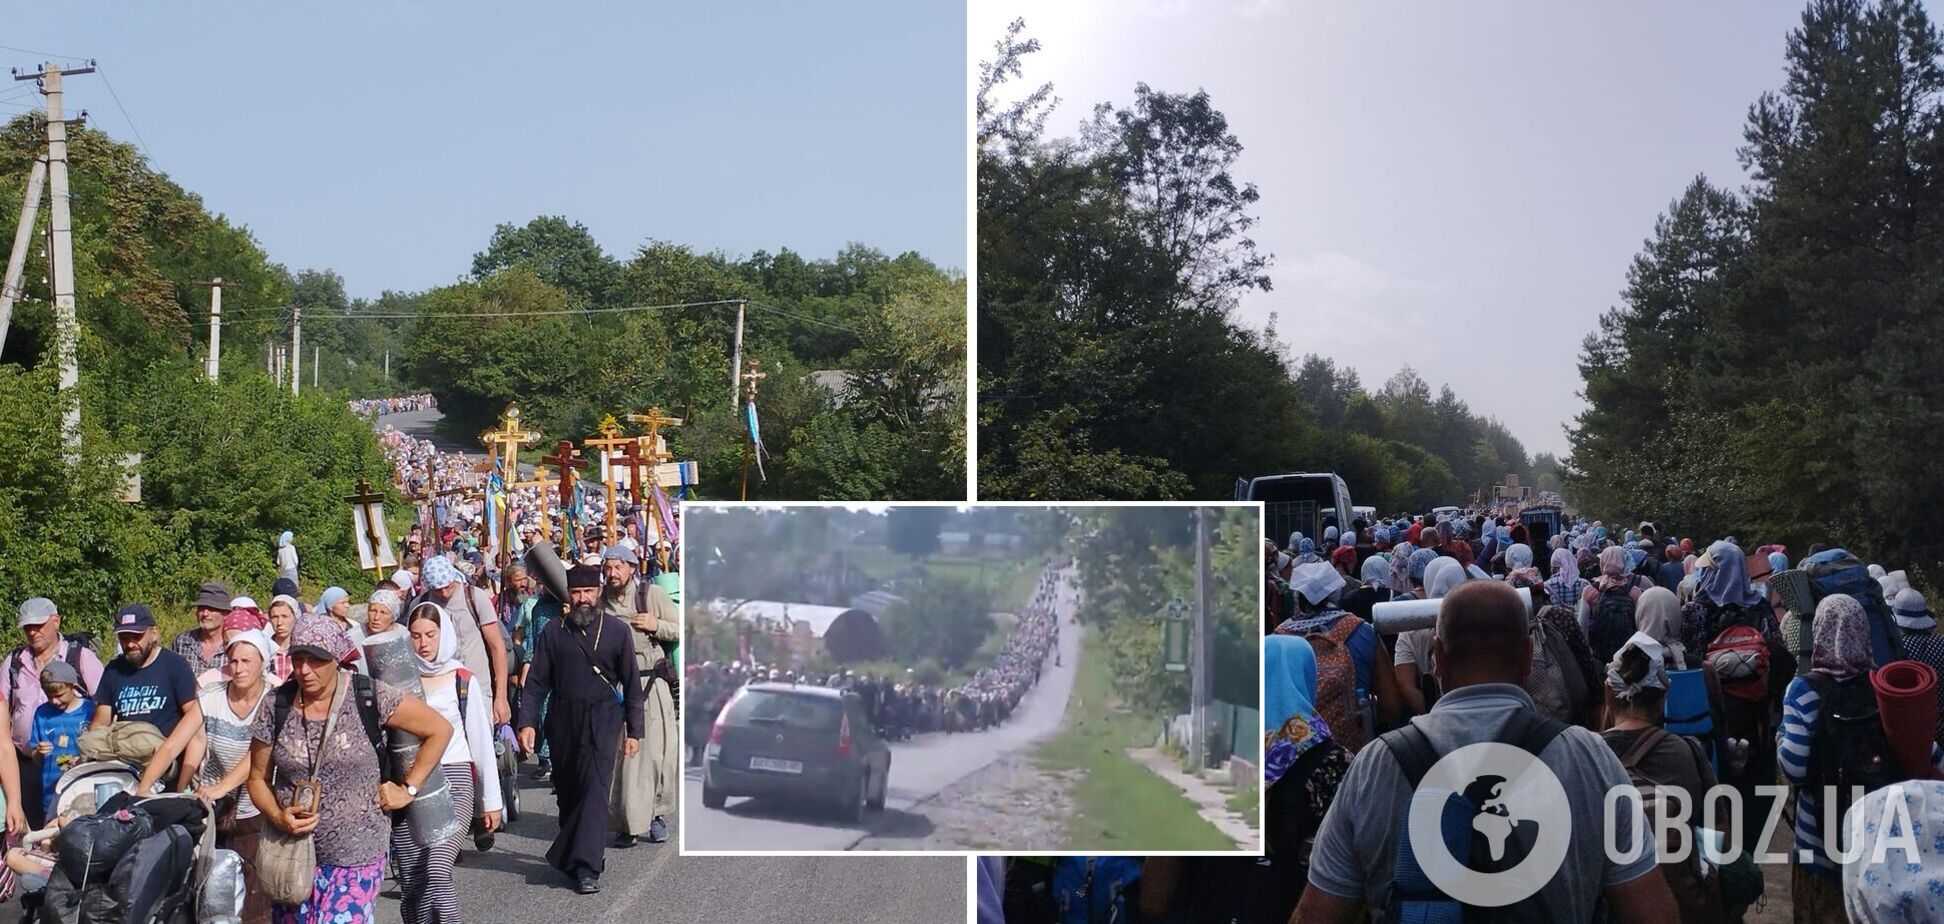 Колонна из 5 тысяч верующих УПЦ МП идет в направлении Почаева, несмотря на запрет полиции на массовые собрания. Видео